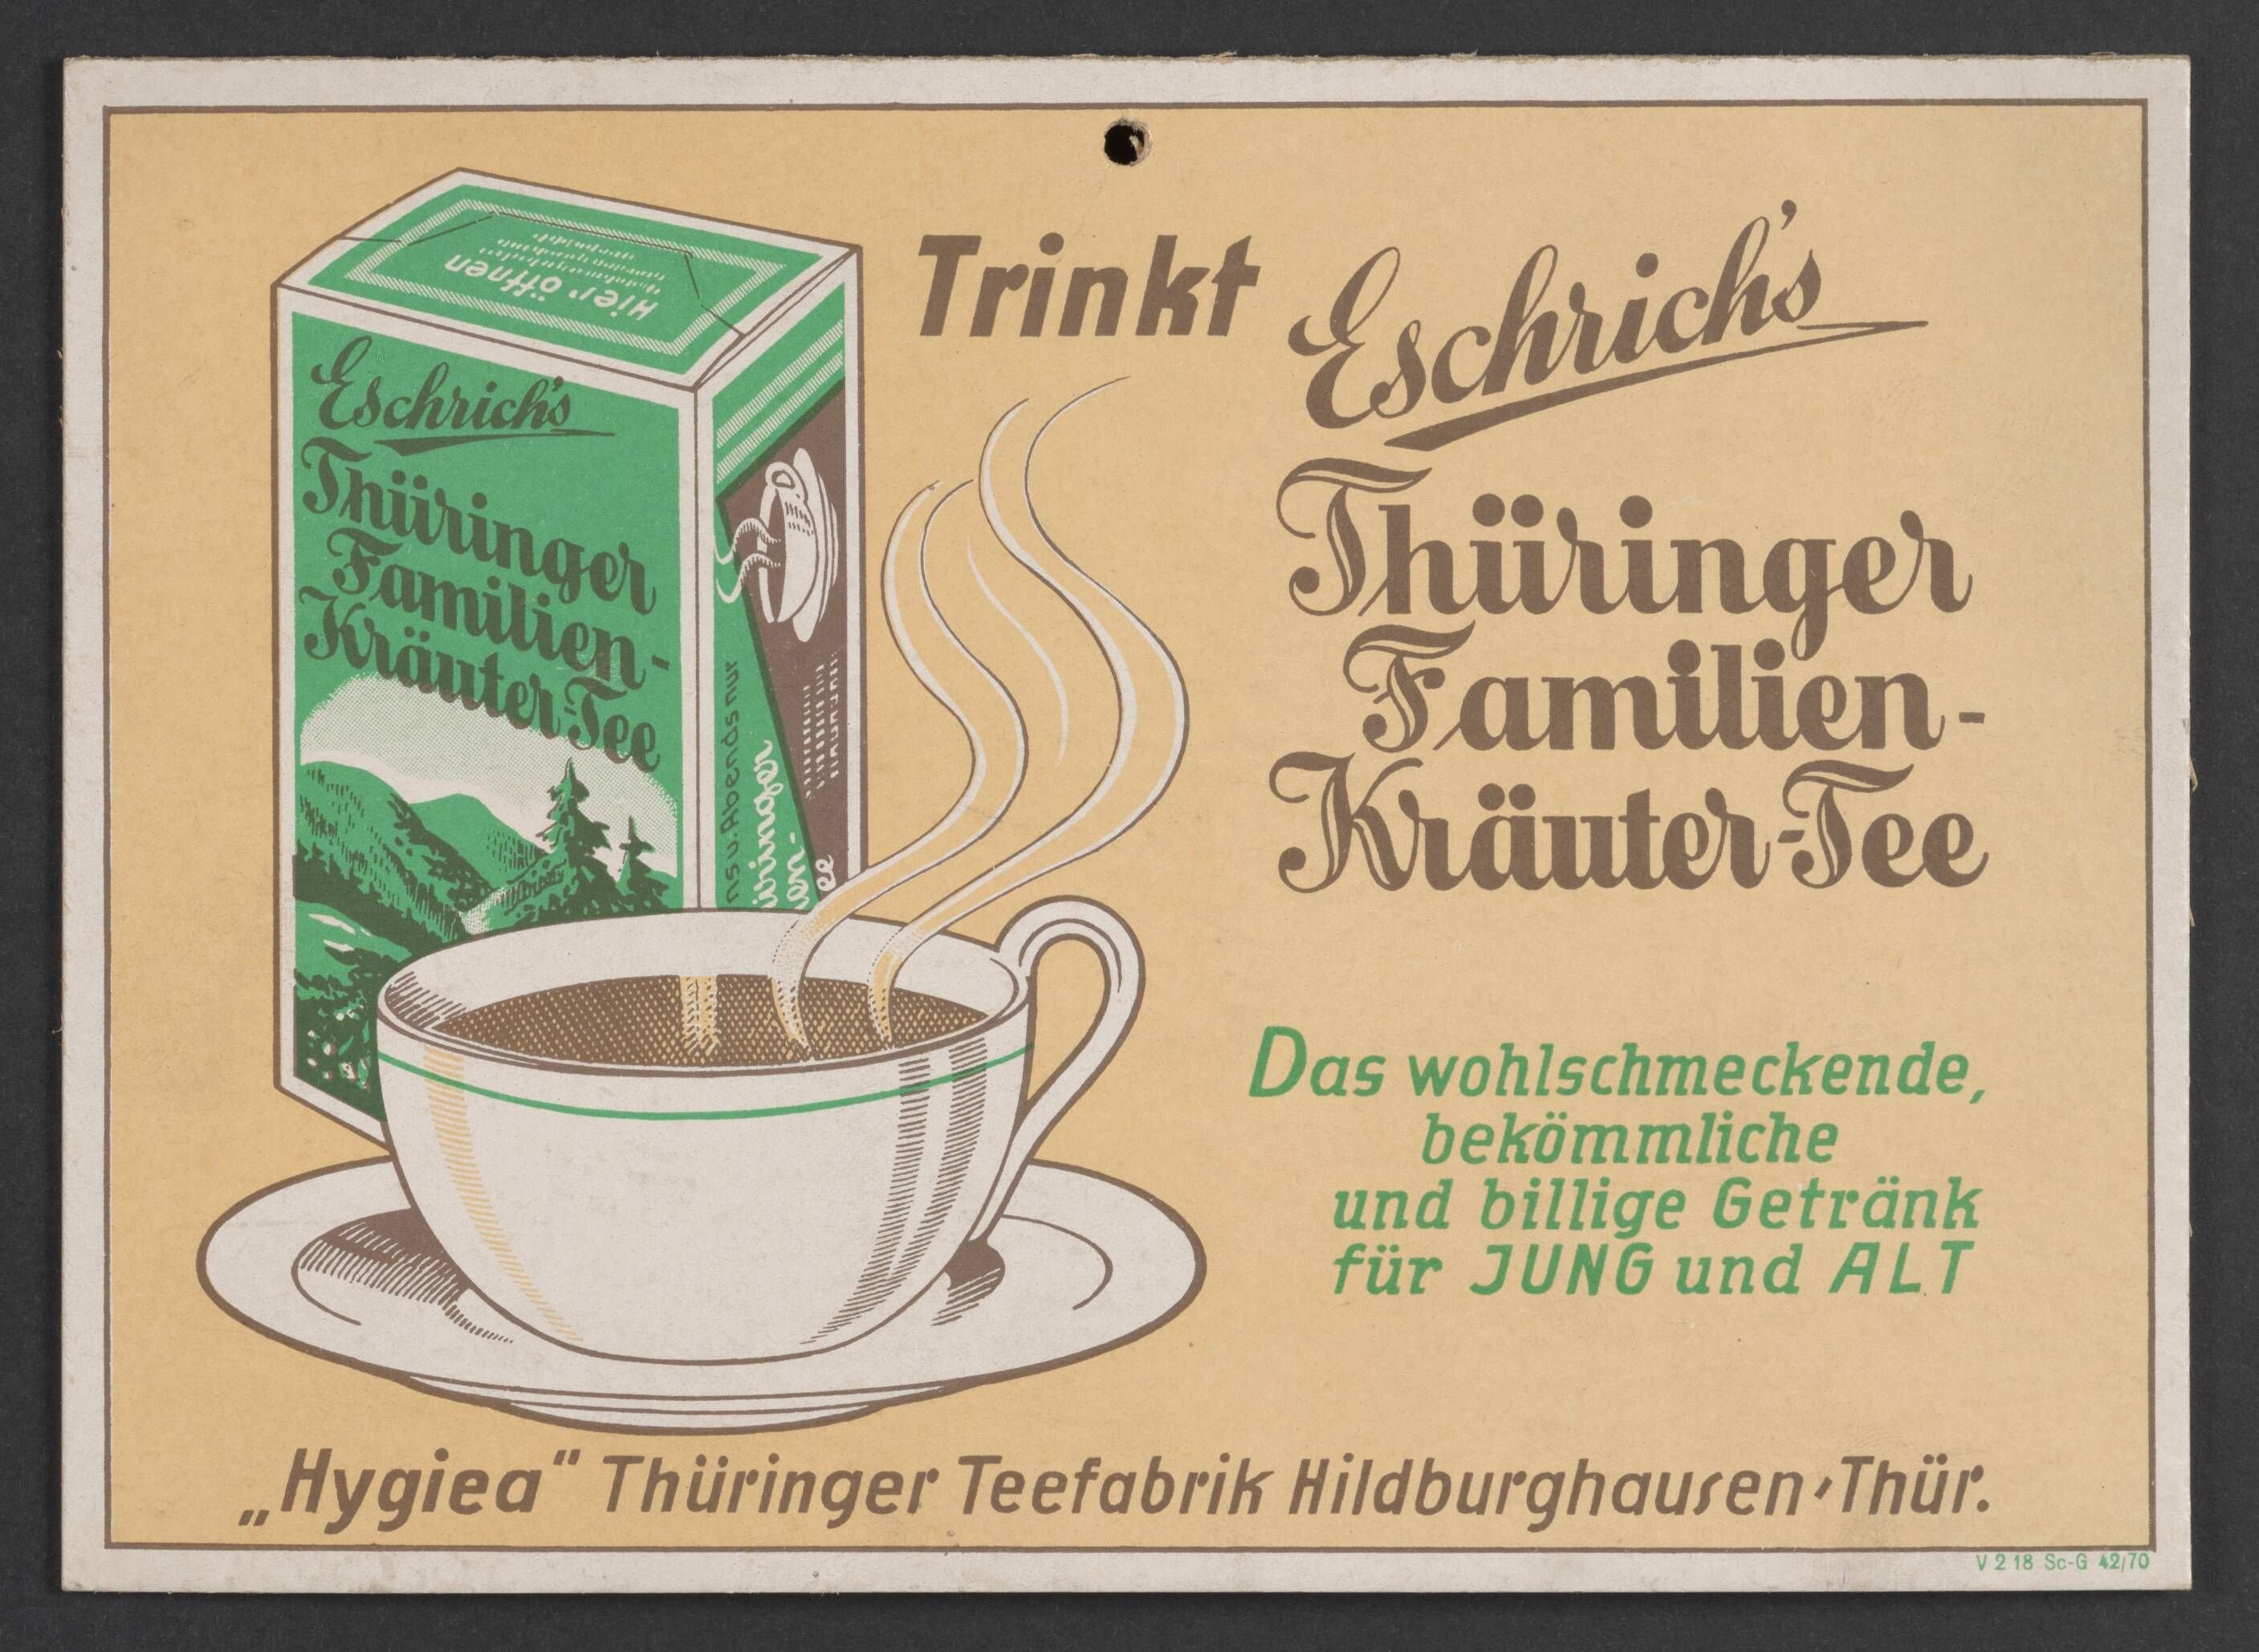 Plakat "Trinkt Eschrich’s Thüringer Familien-Kräuter-Tee" (Stadtmuseum / Kleine Galerie Döbeln CC BY-NC-SA)